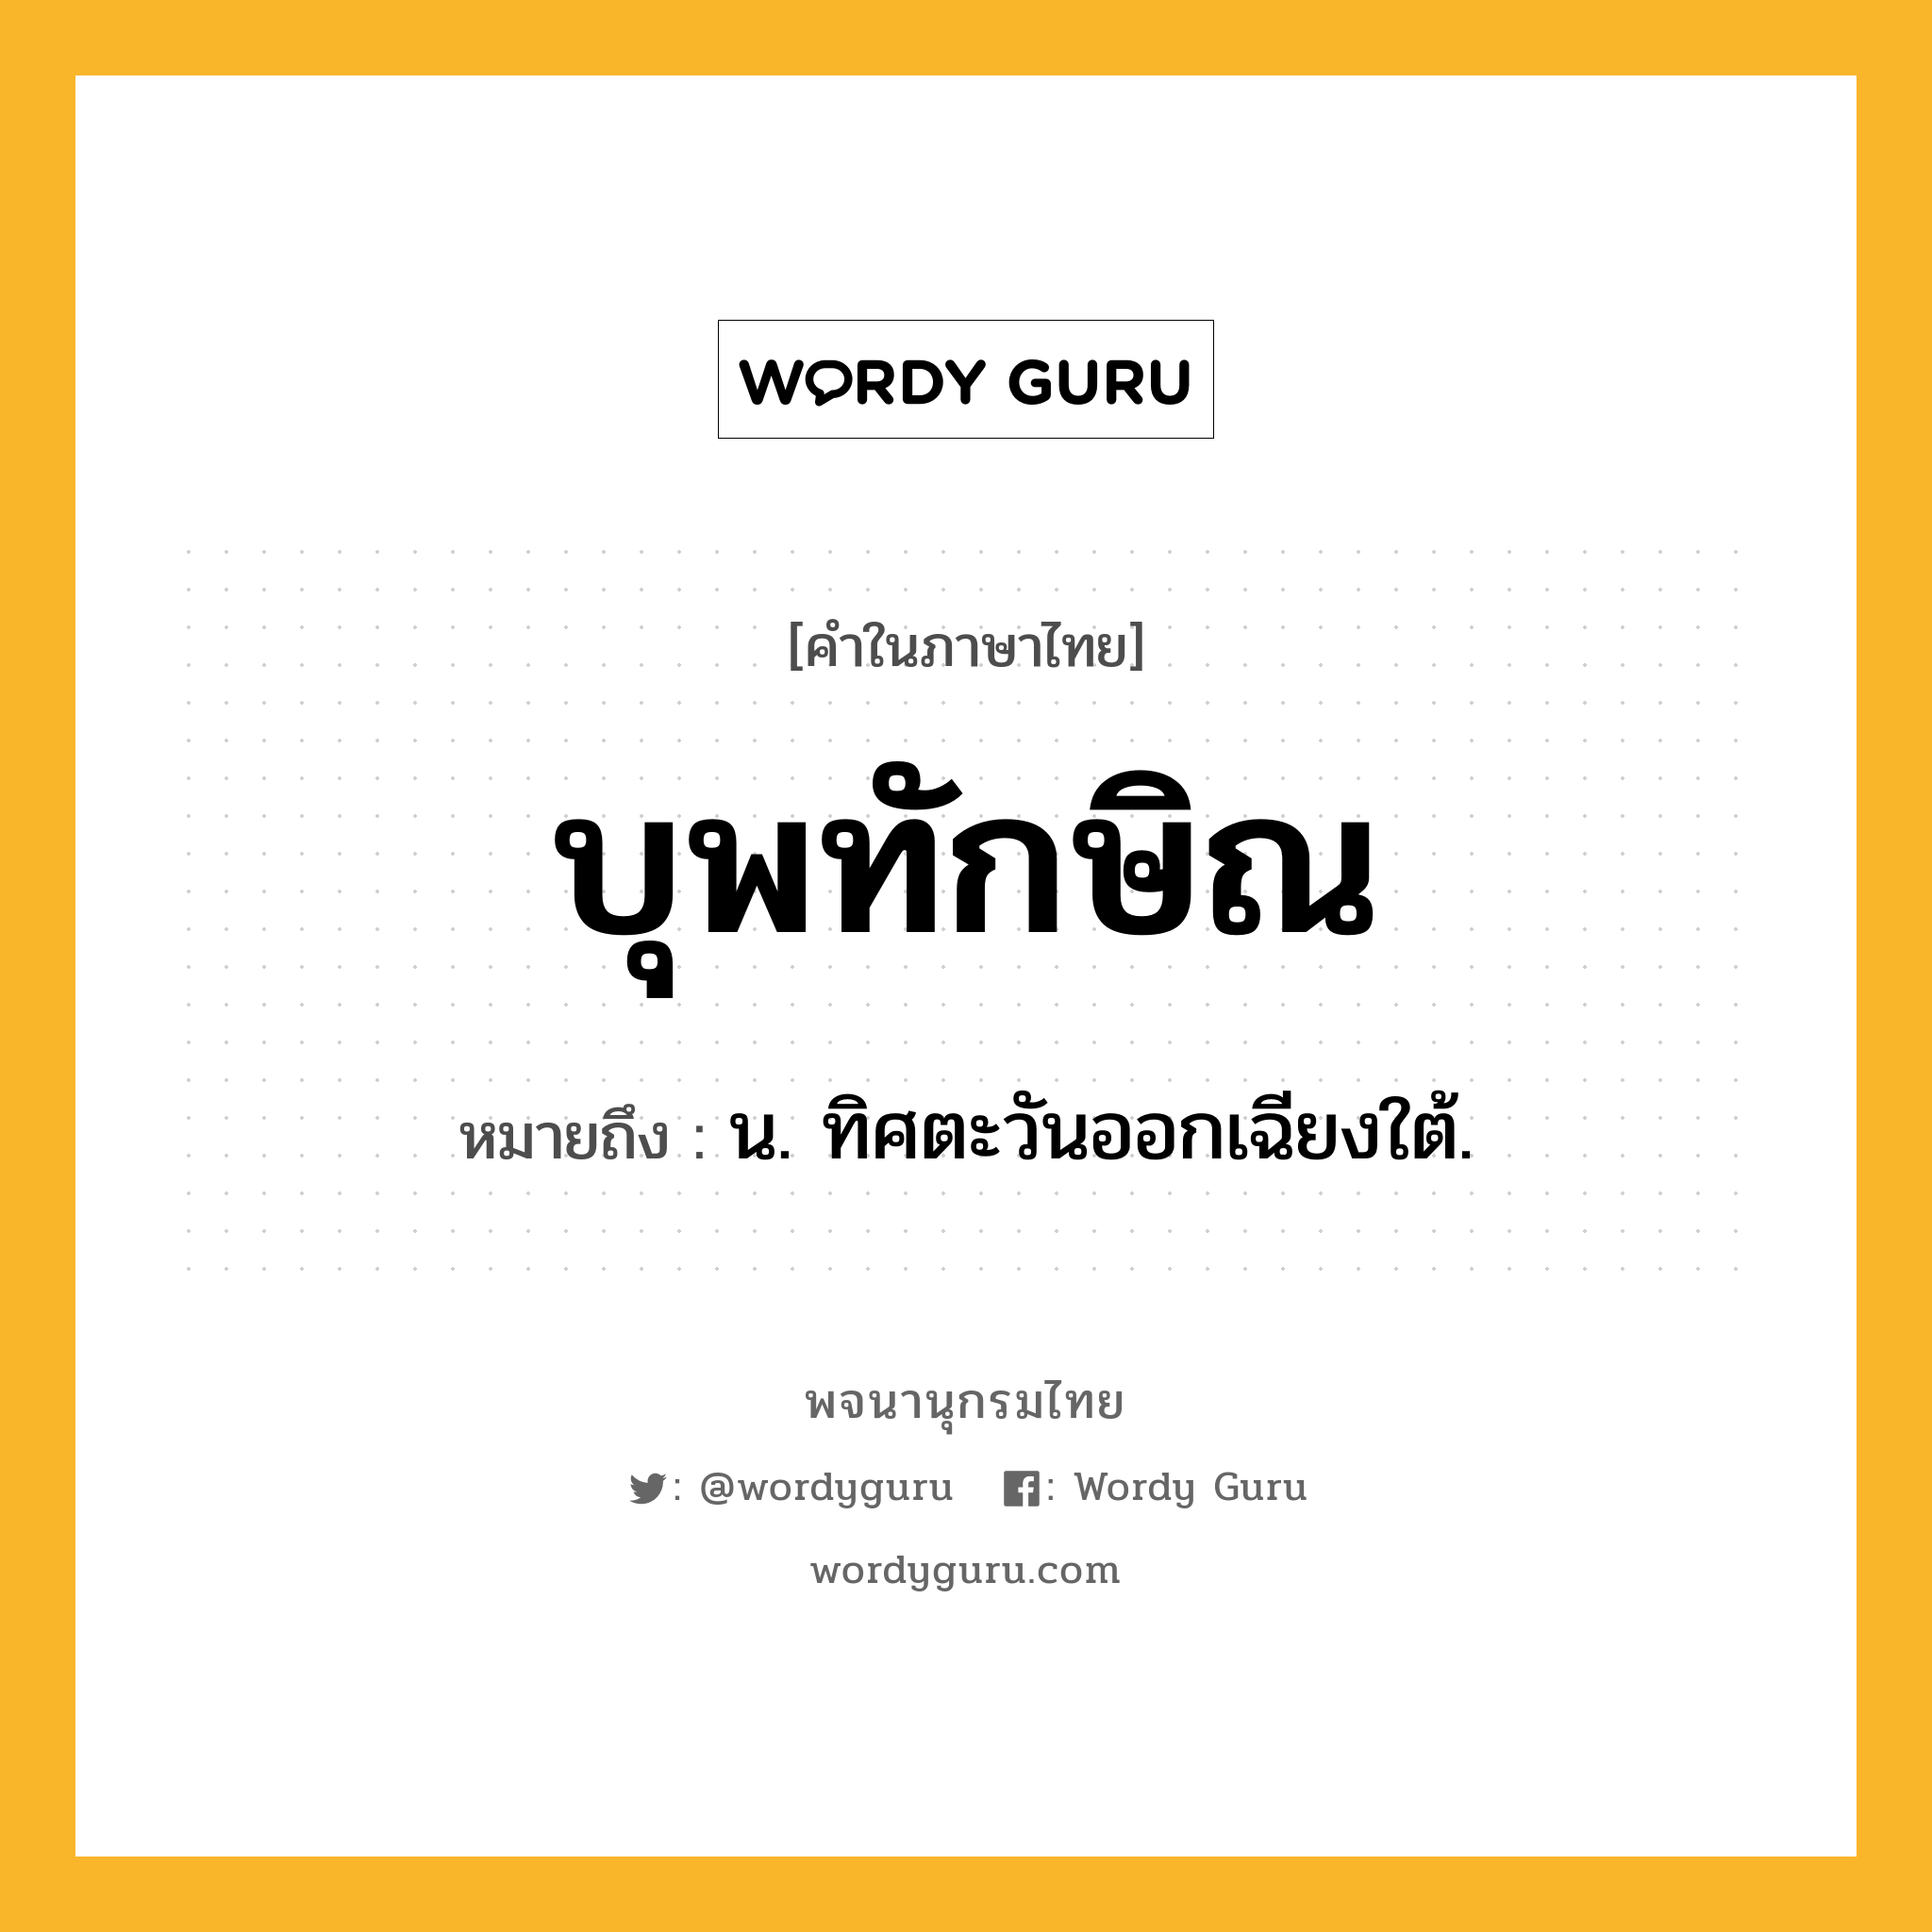 บุพทักษิณ ความหมาย หมายถึงอะไร?, คำในภาษาไทย บุพทักษิณ หมายถึง น. ทิศตะวันออกเฉียงใต้.